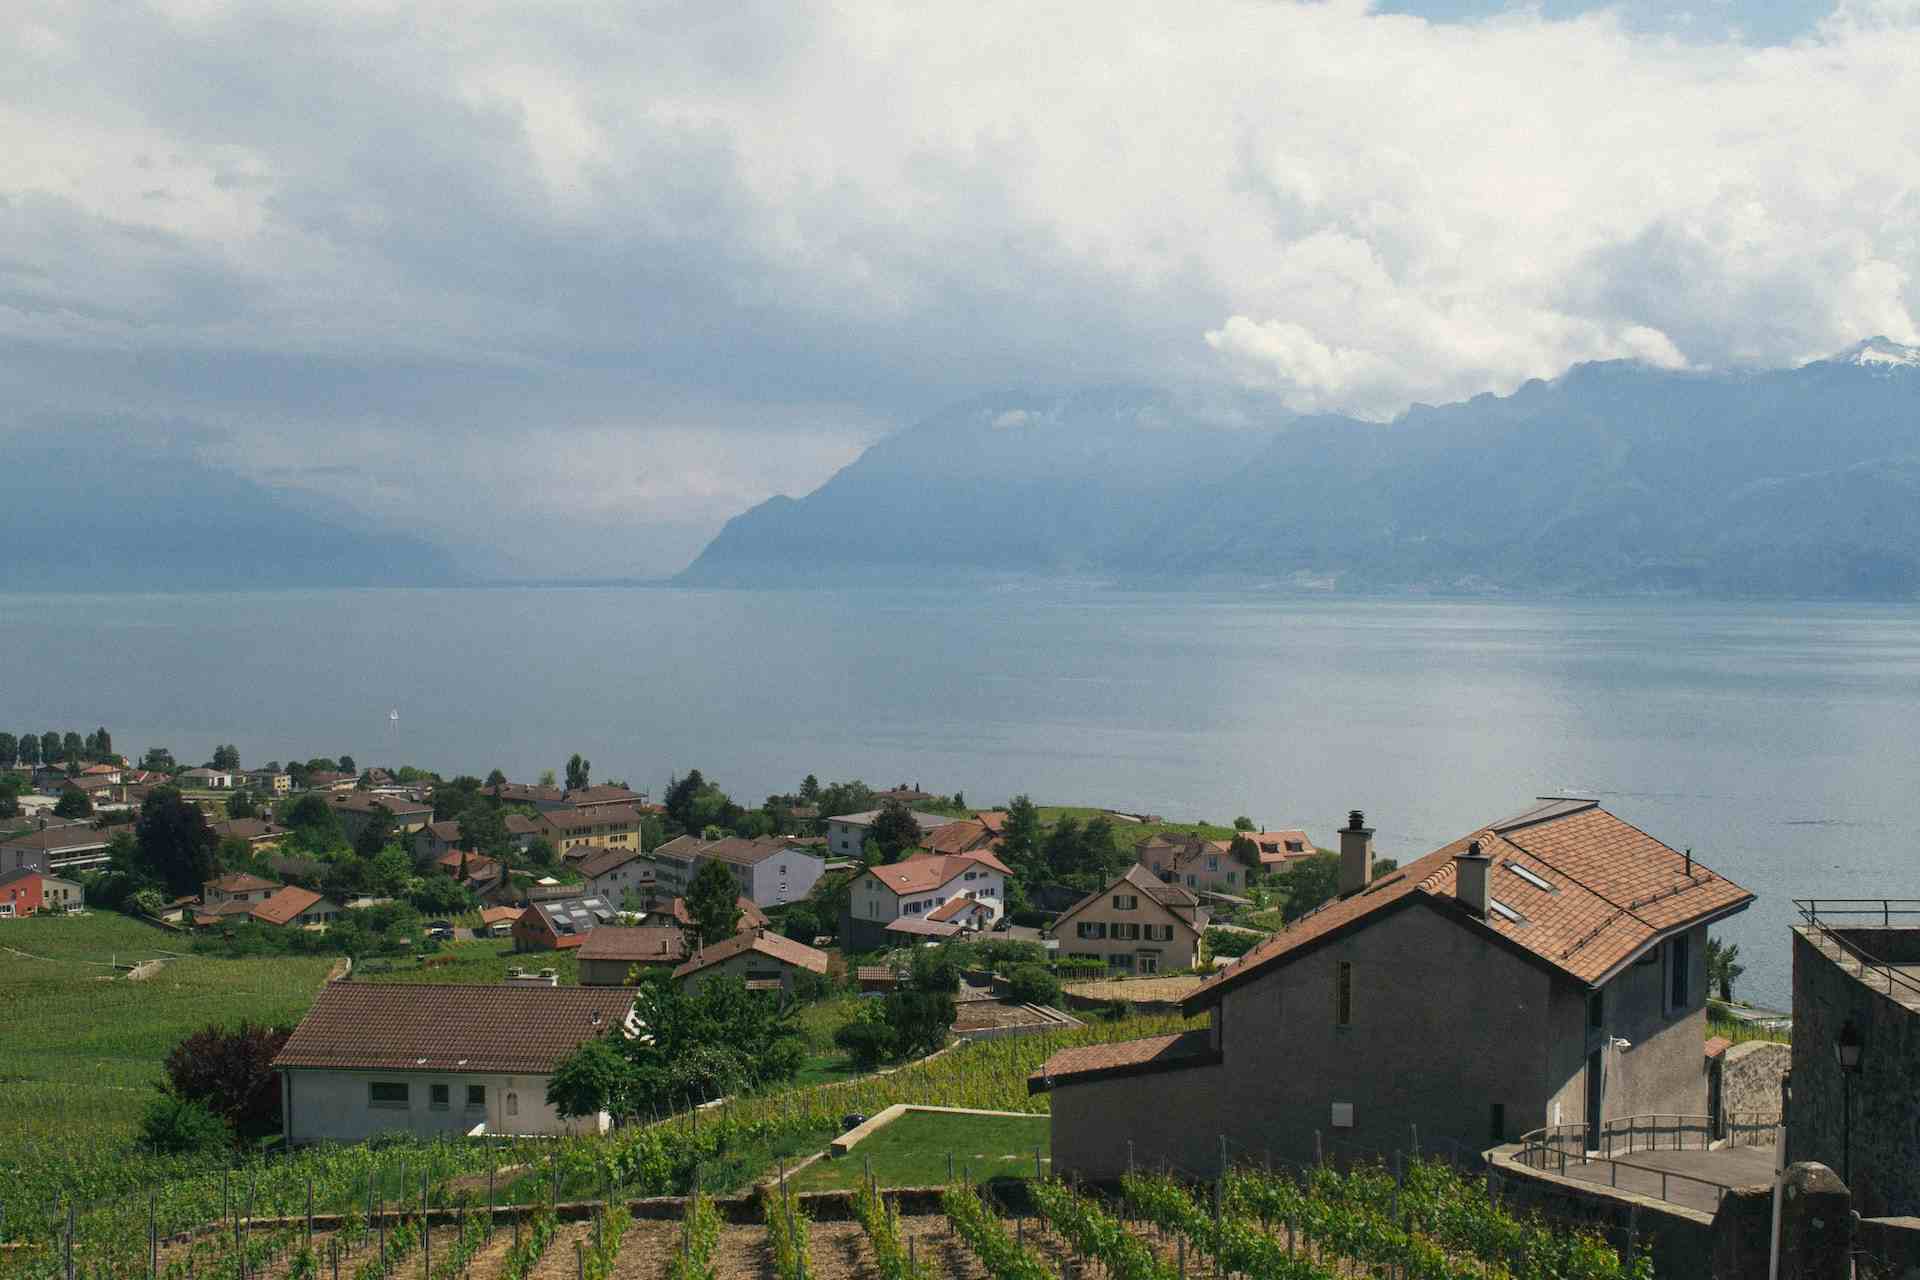 Alpes en Fleurs, producer in La Comballaz canton of Vaud in Switzerland